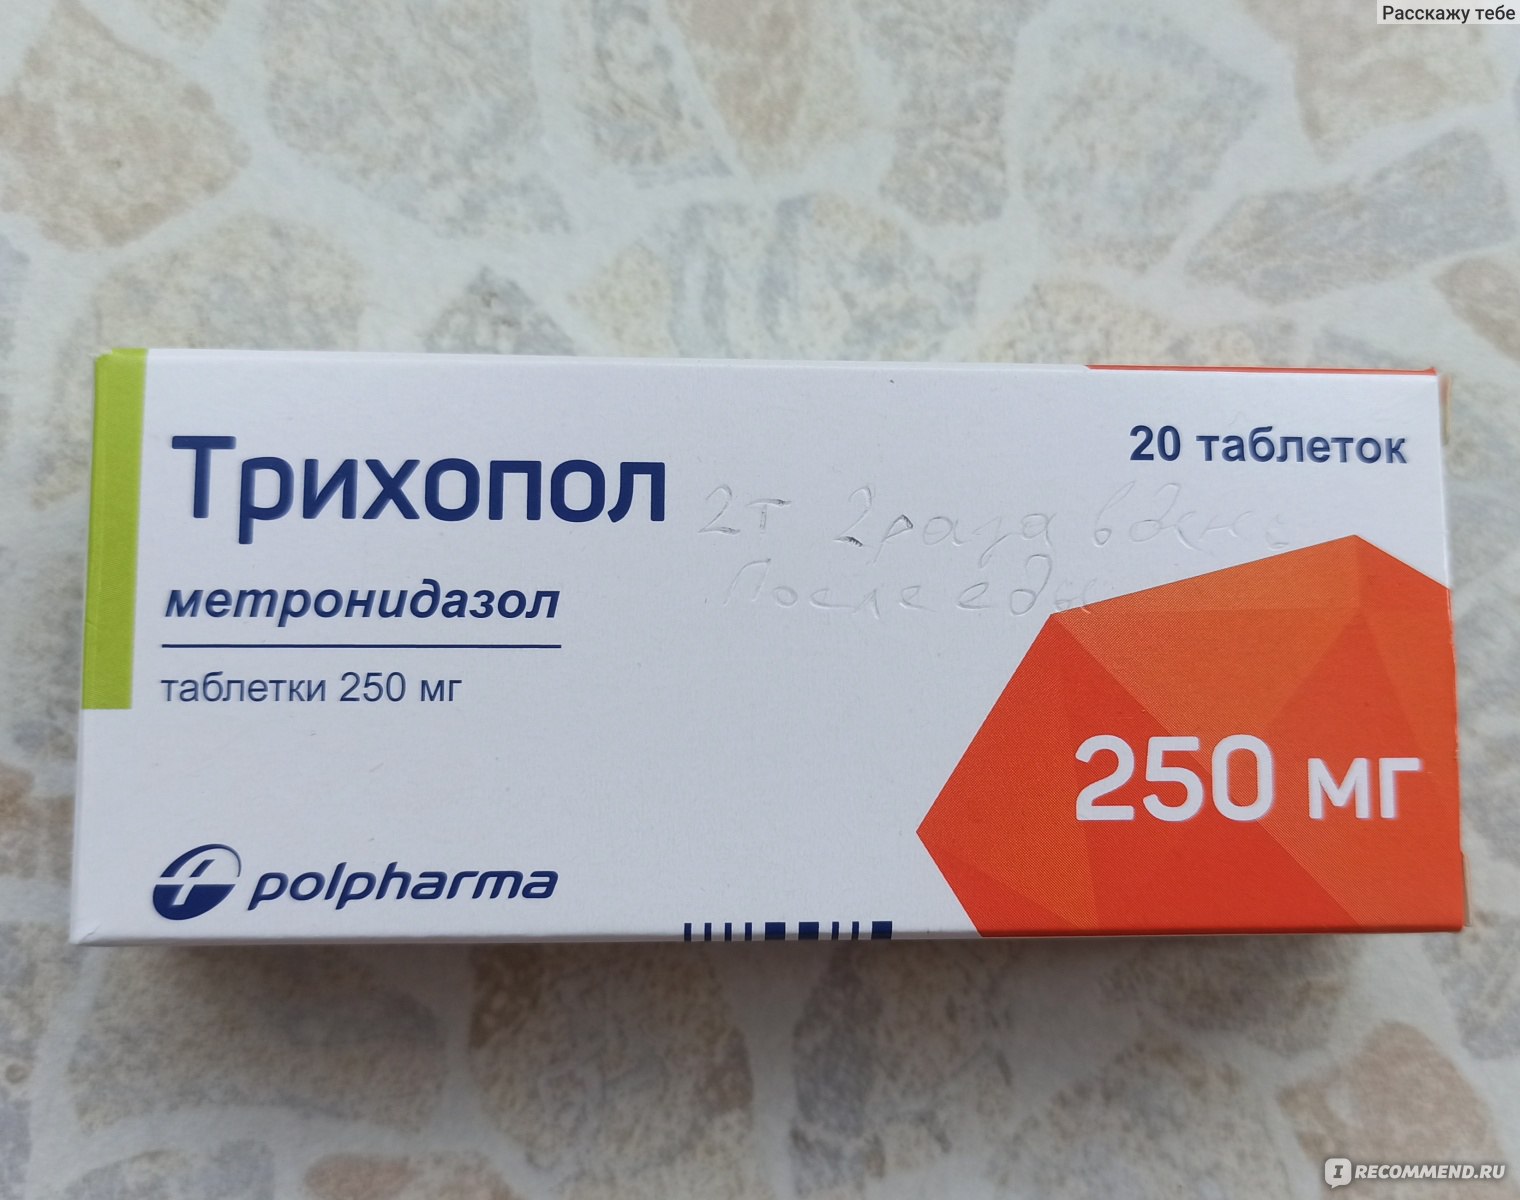 Противопротозойный препарат с антибактериальной активностью Polpharma .